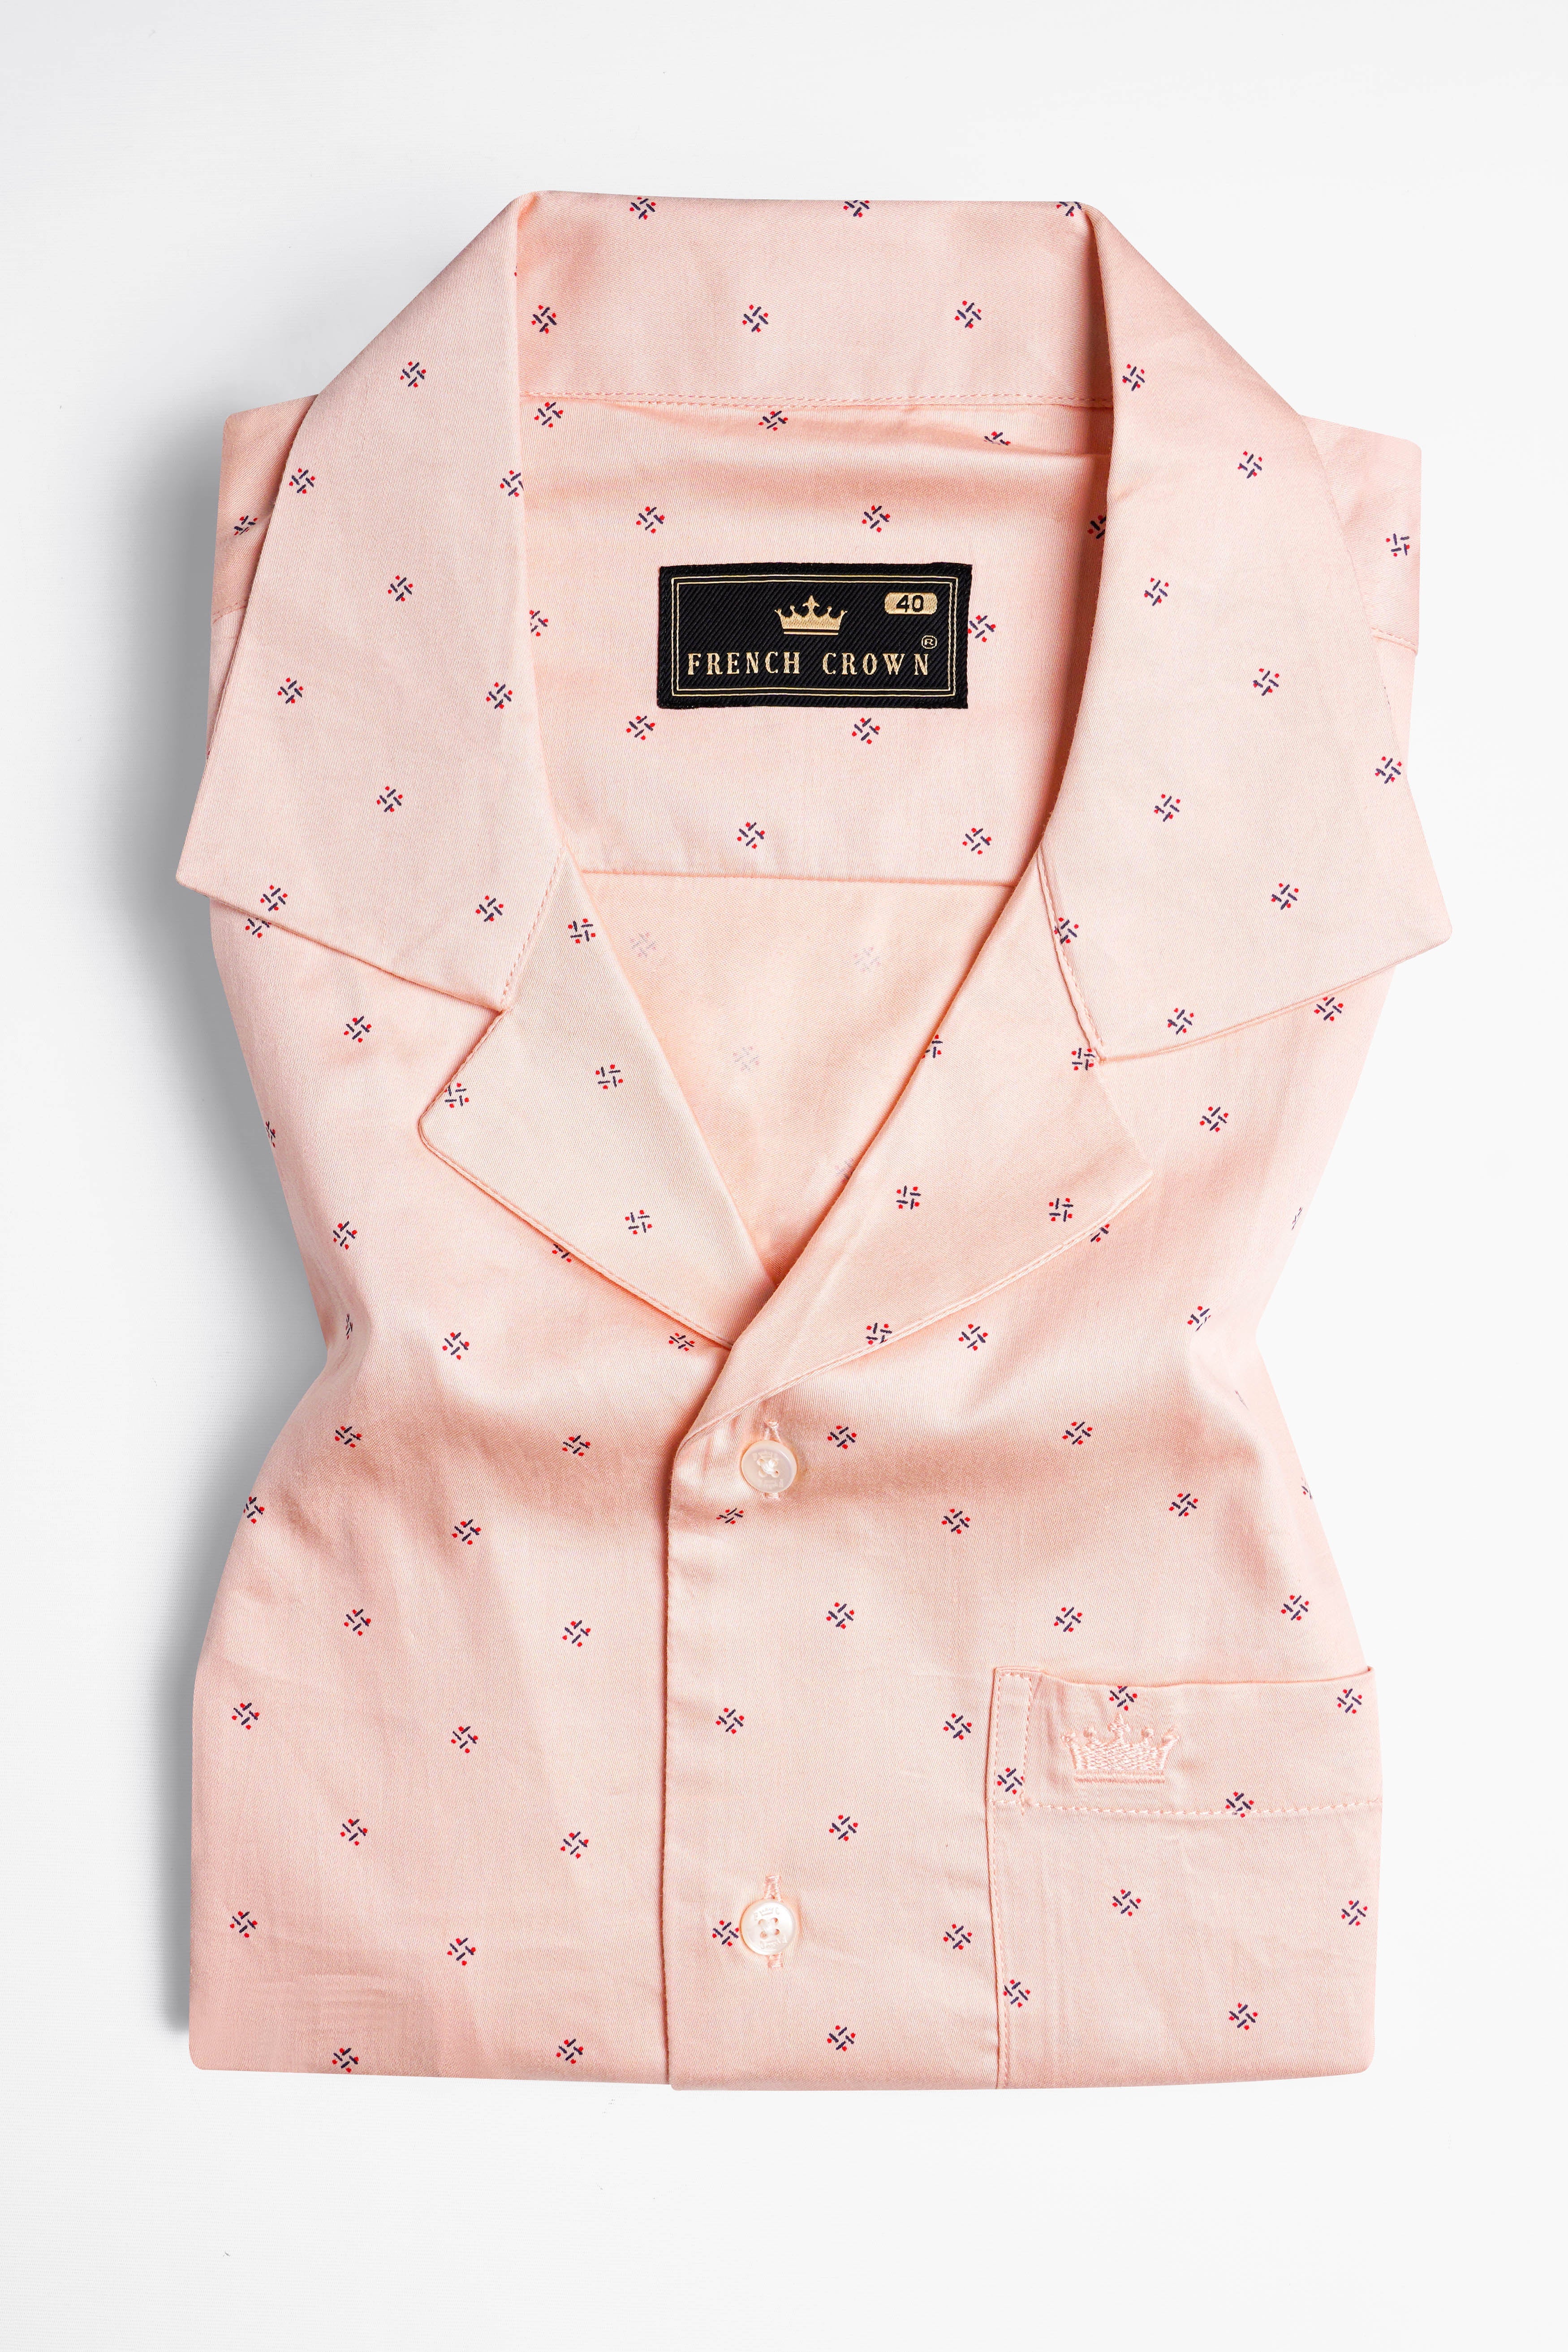 Watusi Peach Printed Super Soft Premium Cotton Shirt